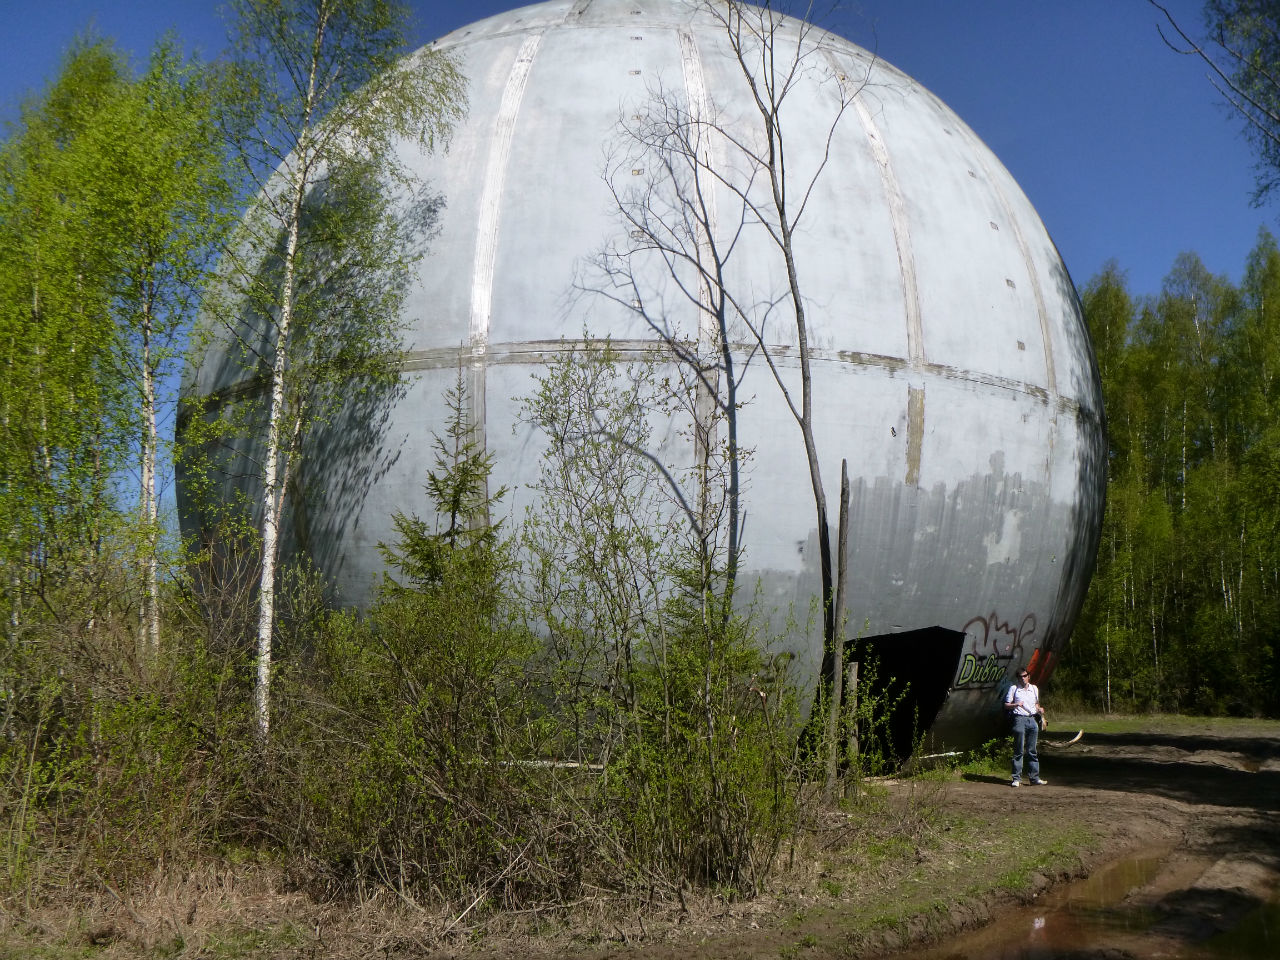 Огромное р н. Шар купол Дубна. Советская радиолокационная станция Дубна шар. Дубна шар в лесу. Дубна РЛС шар.